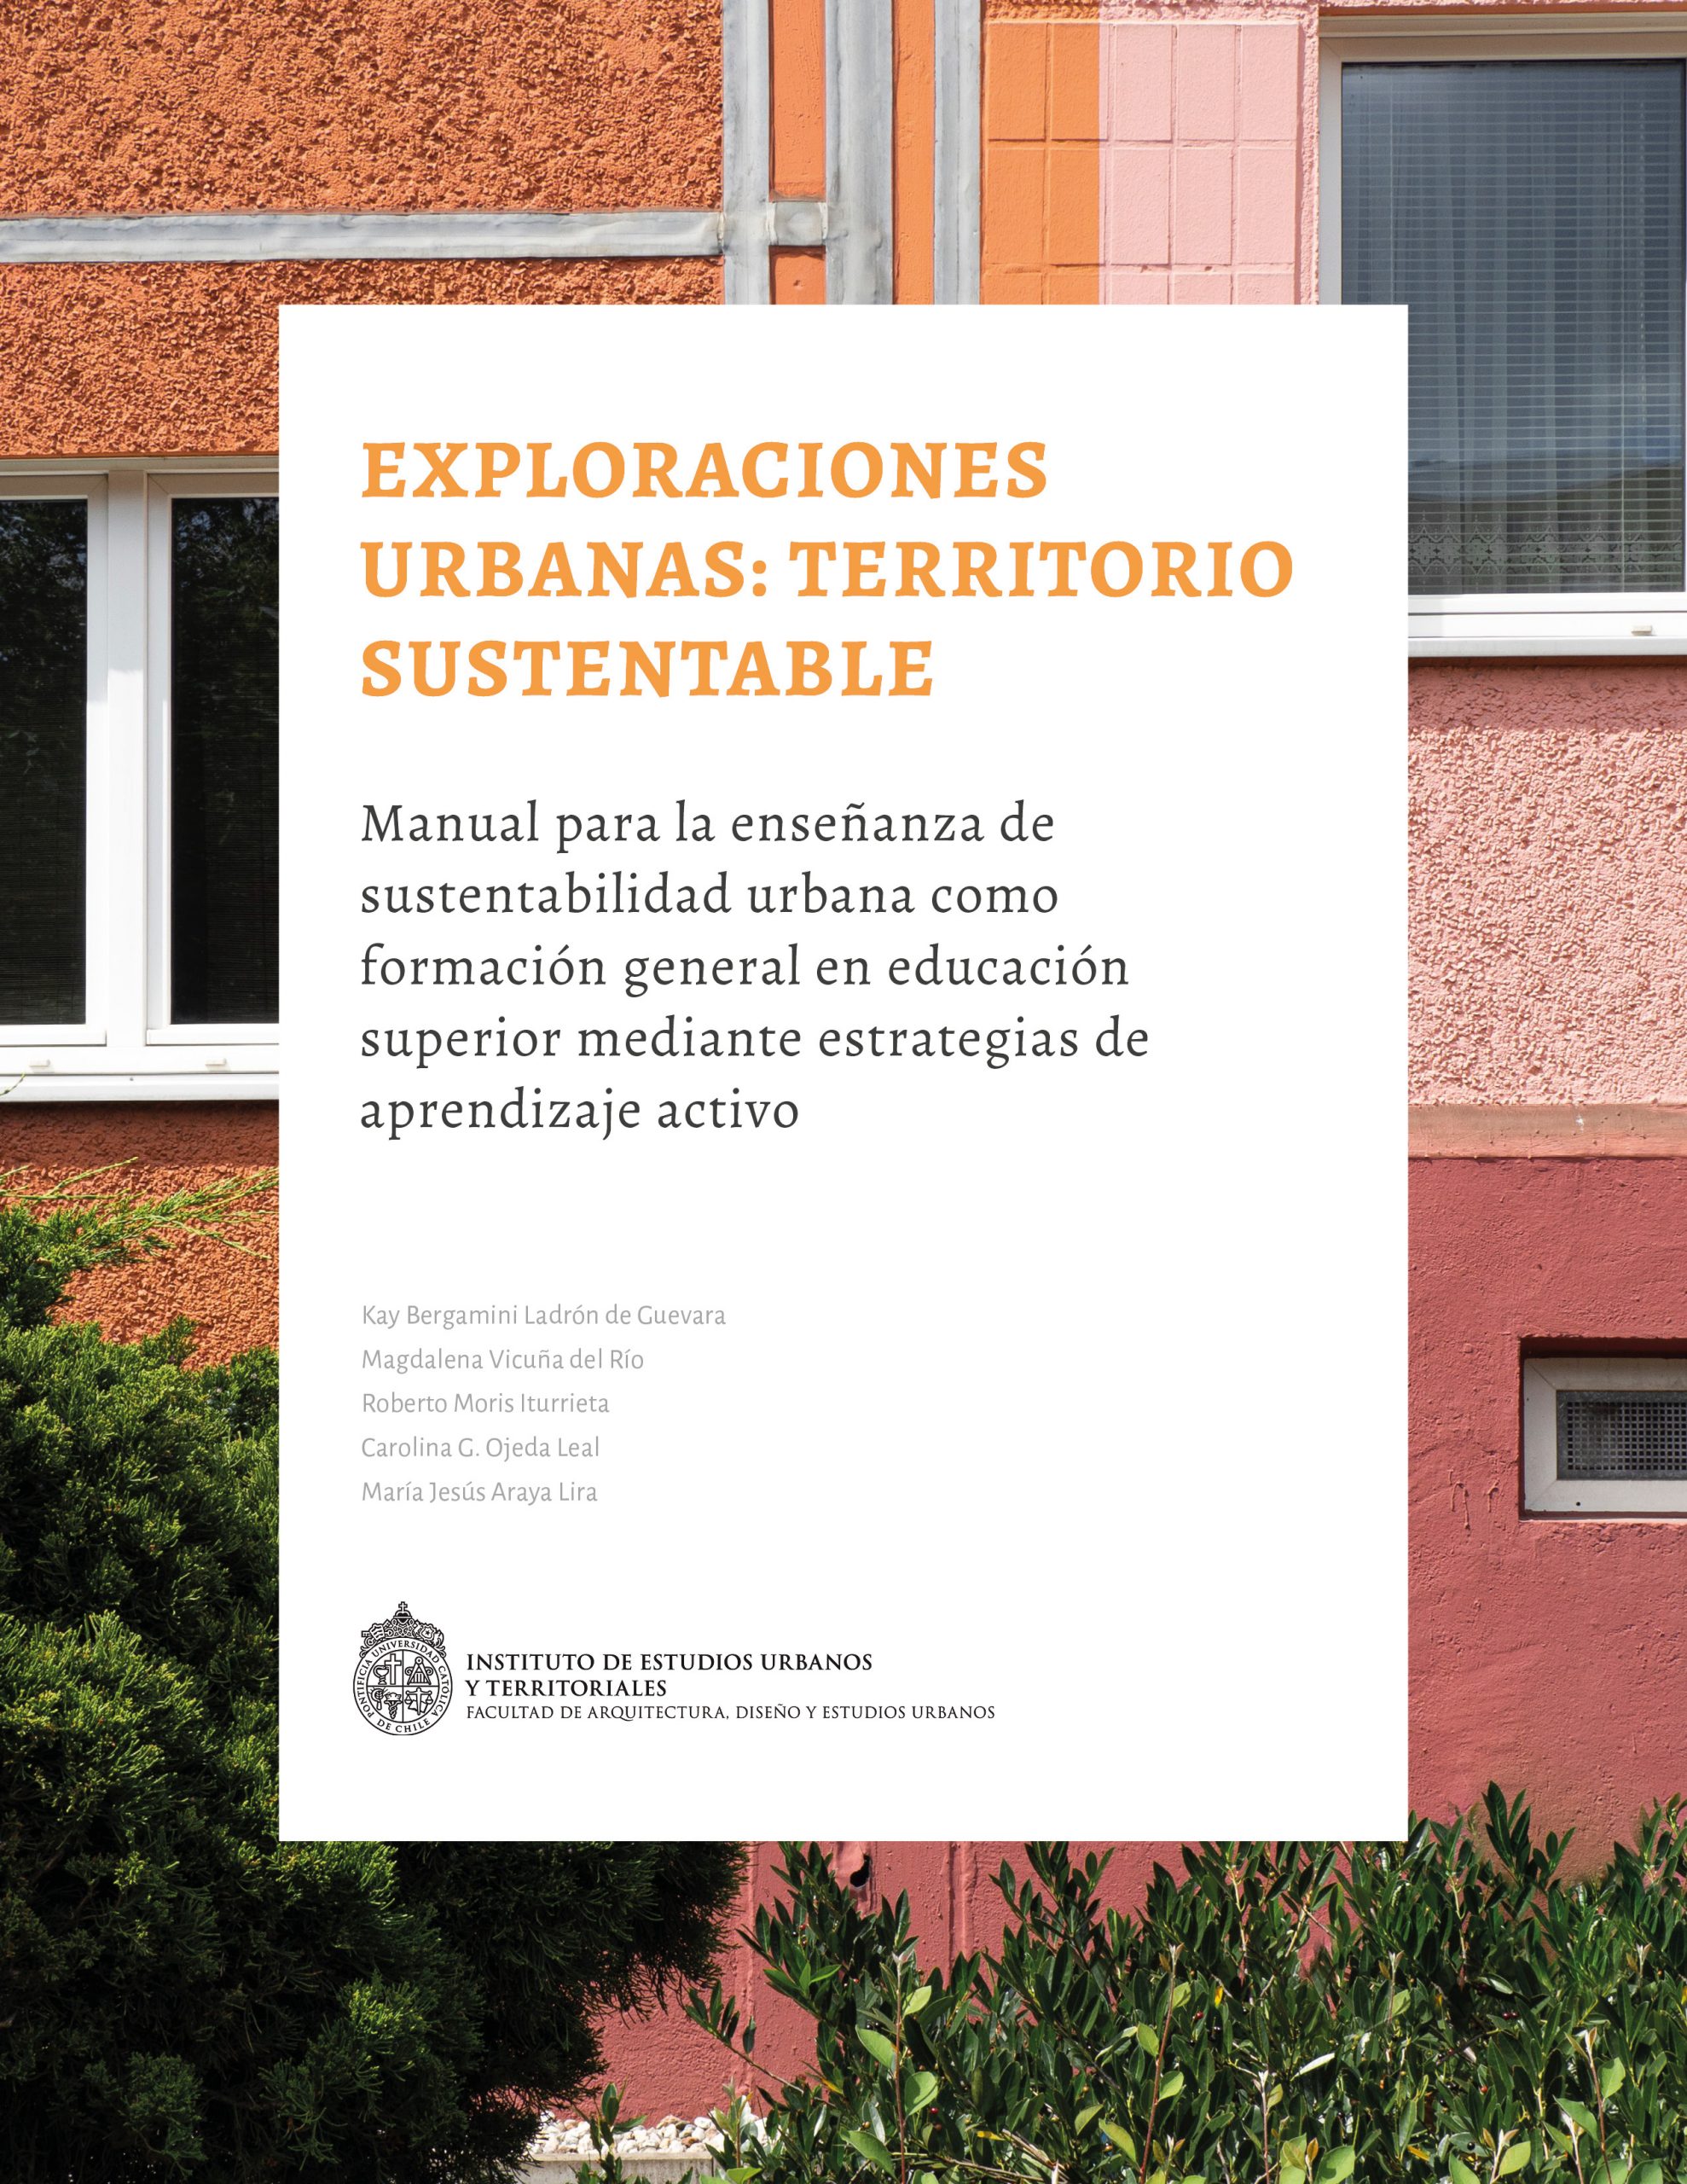 Exploraciones Urbanas: Territorio Sustentable. Manual para la enseñanza de Sustentabilidad Urbana como Formación General en Educación Superior mediante Estrategias de Aprendizaje Activo.